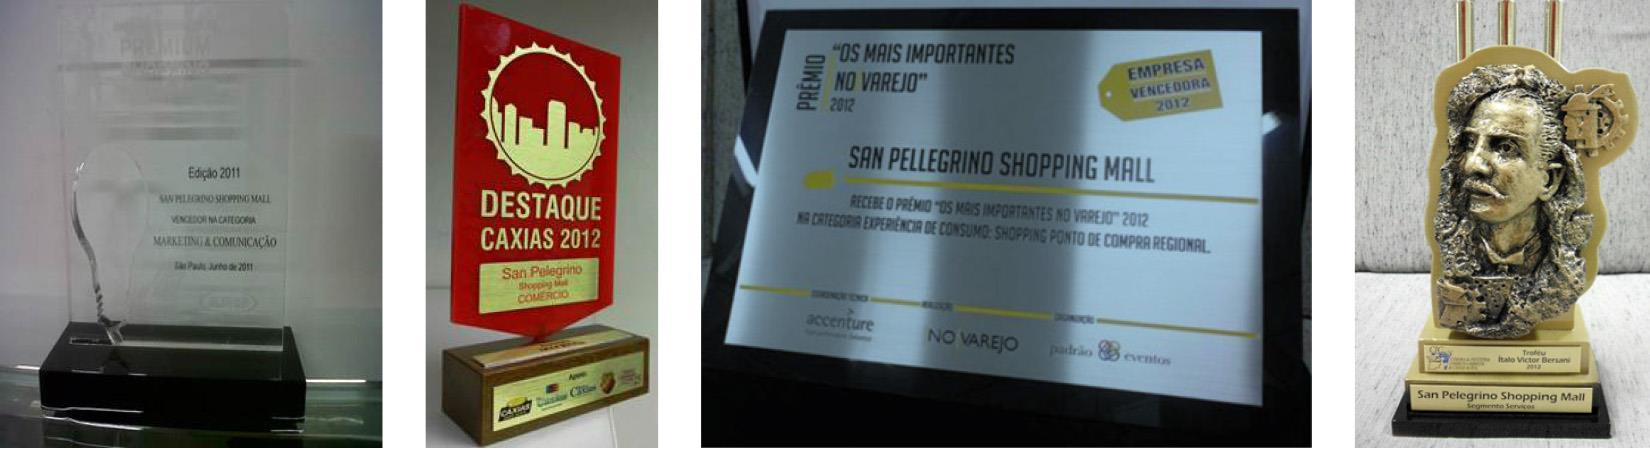 SHOPPING SAN PELEGRINO PRÊMIOS Shopping Alshop Categoria Marketing e Comunicação Case: Quatro Dias de Preços Derretidos Destaque